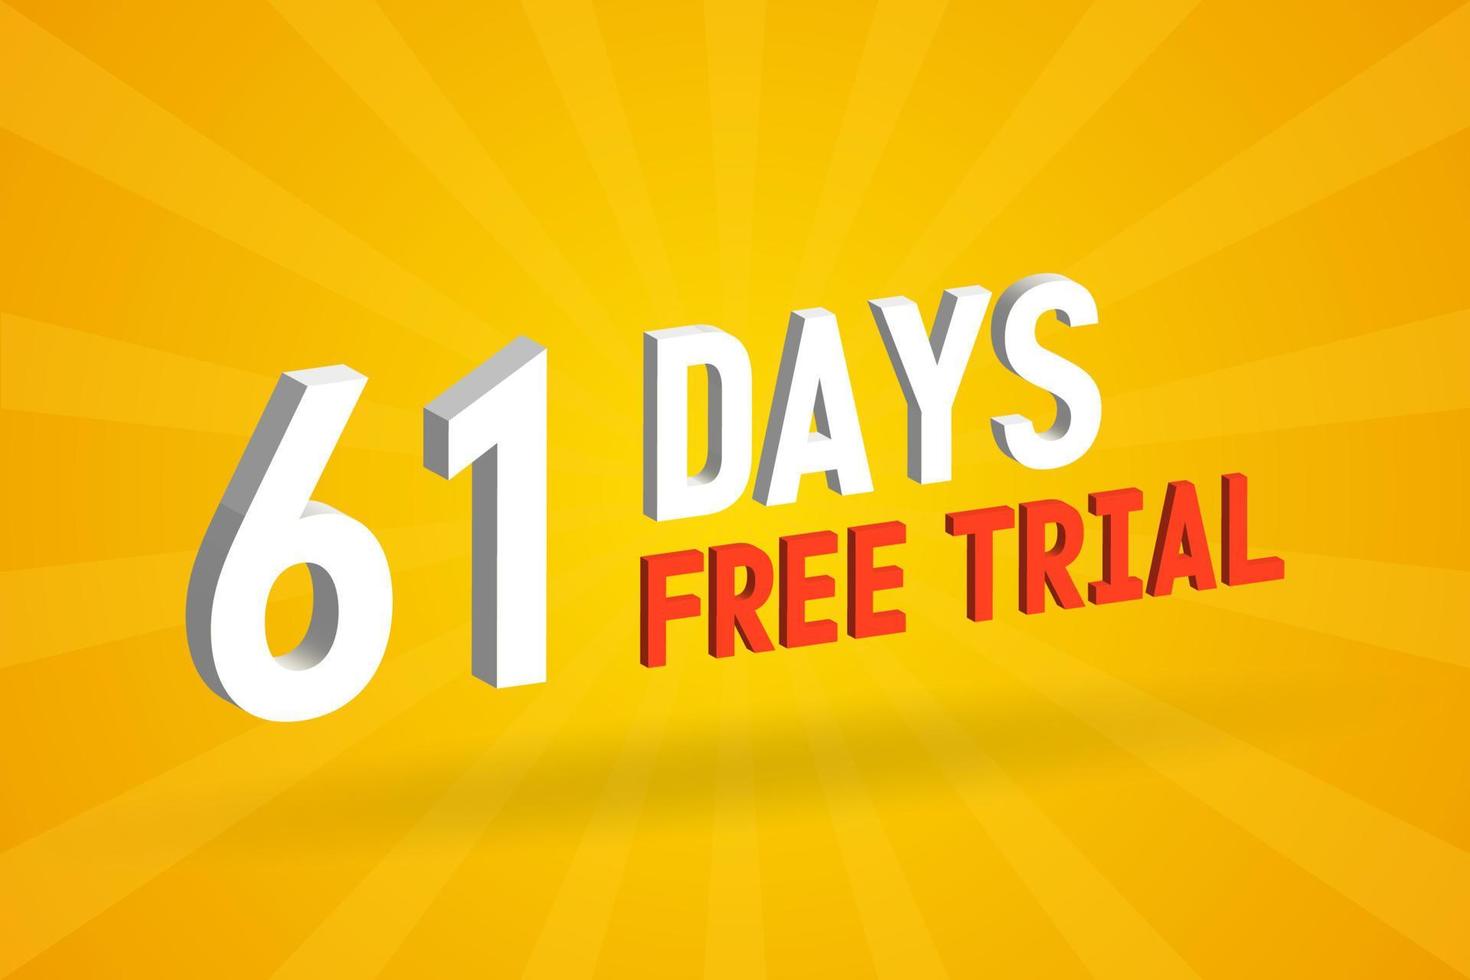 fri erbjudande 61 dagar fri rättegång 3d text stock vektor